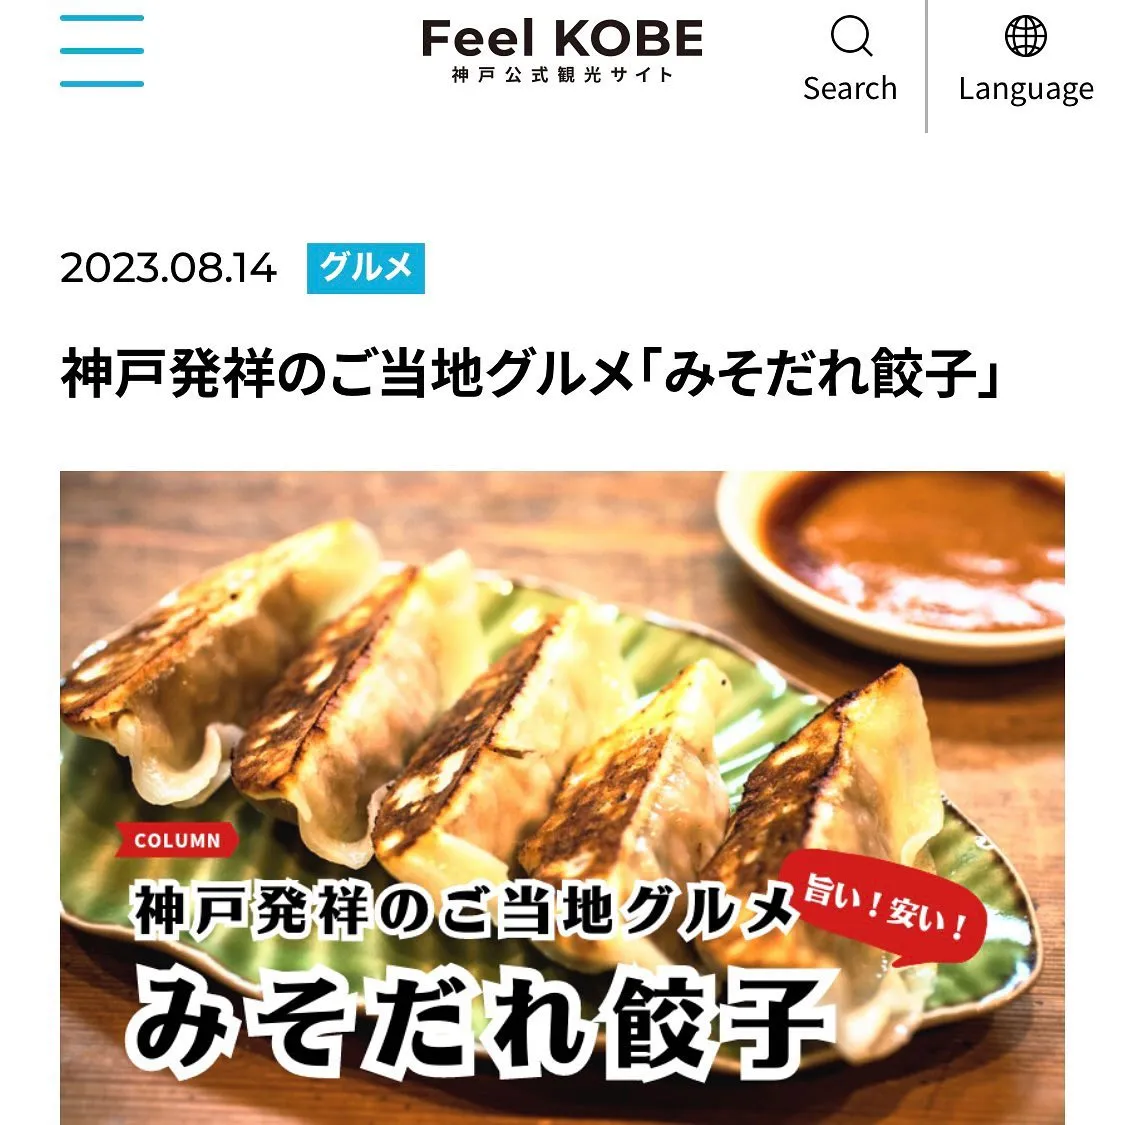 「Feel KOBE」神戸公式観光サイト